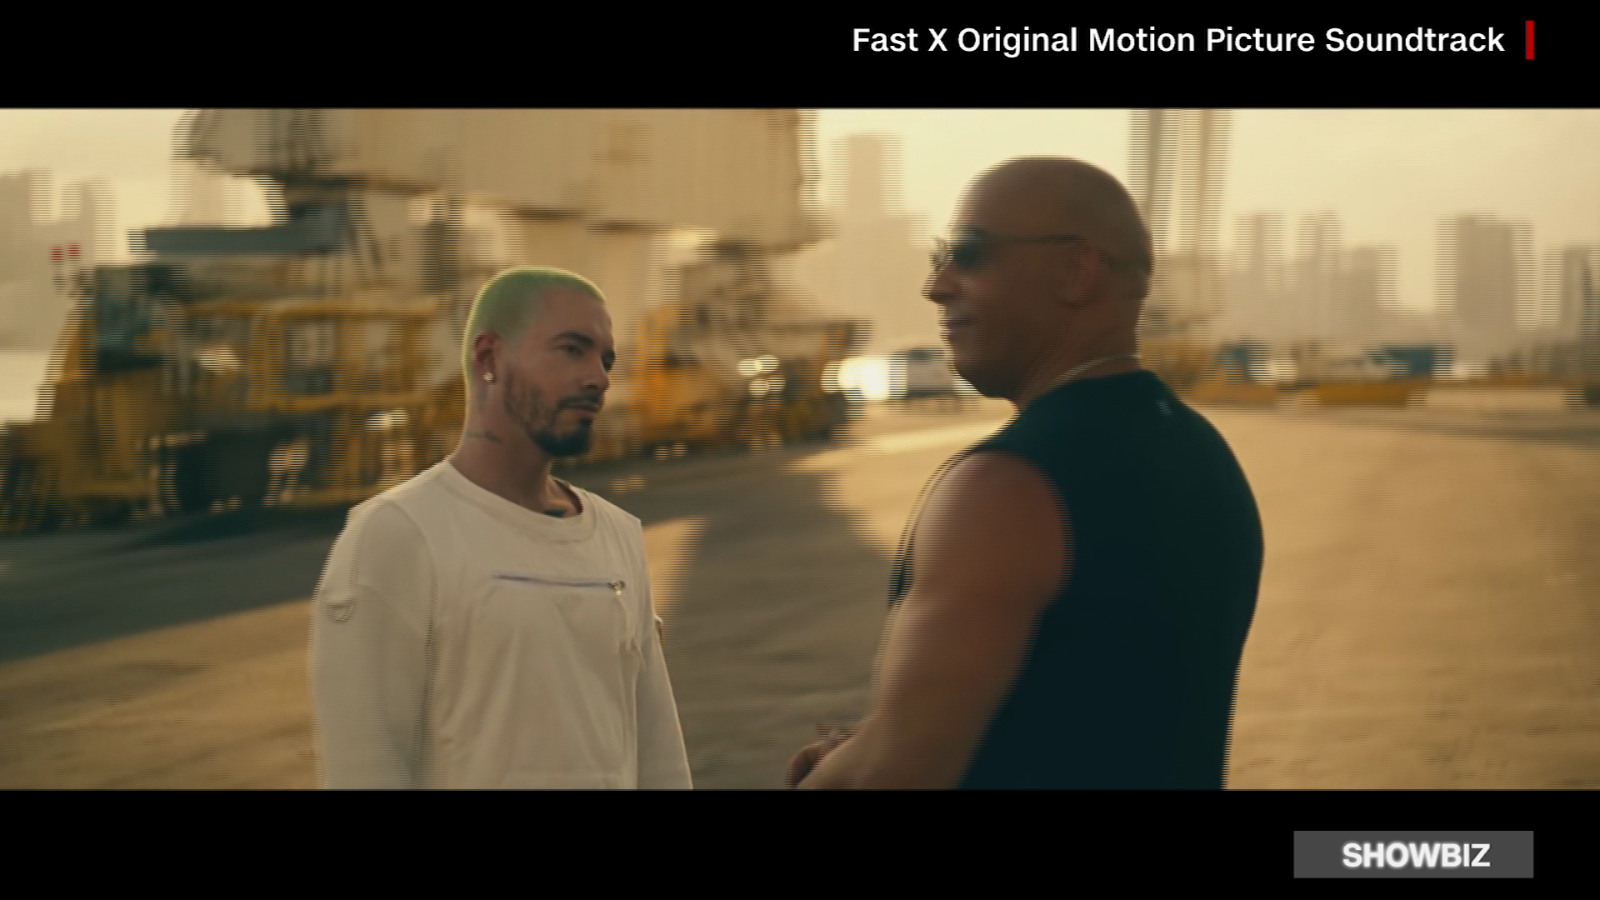 J Balvin lanza su nuevo video «Toretto» con Vin Diesel